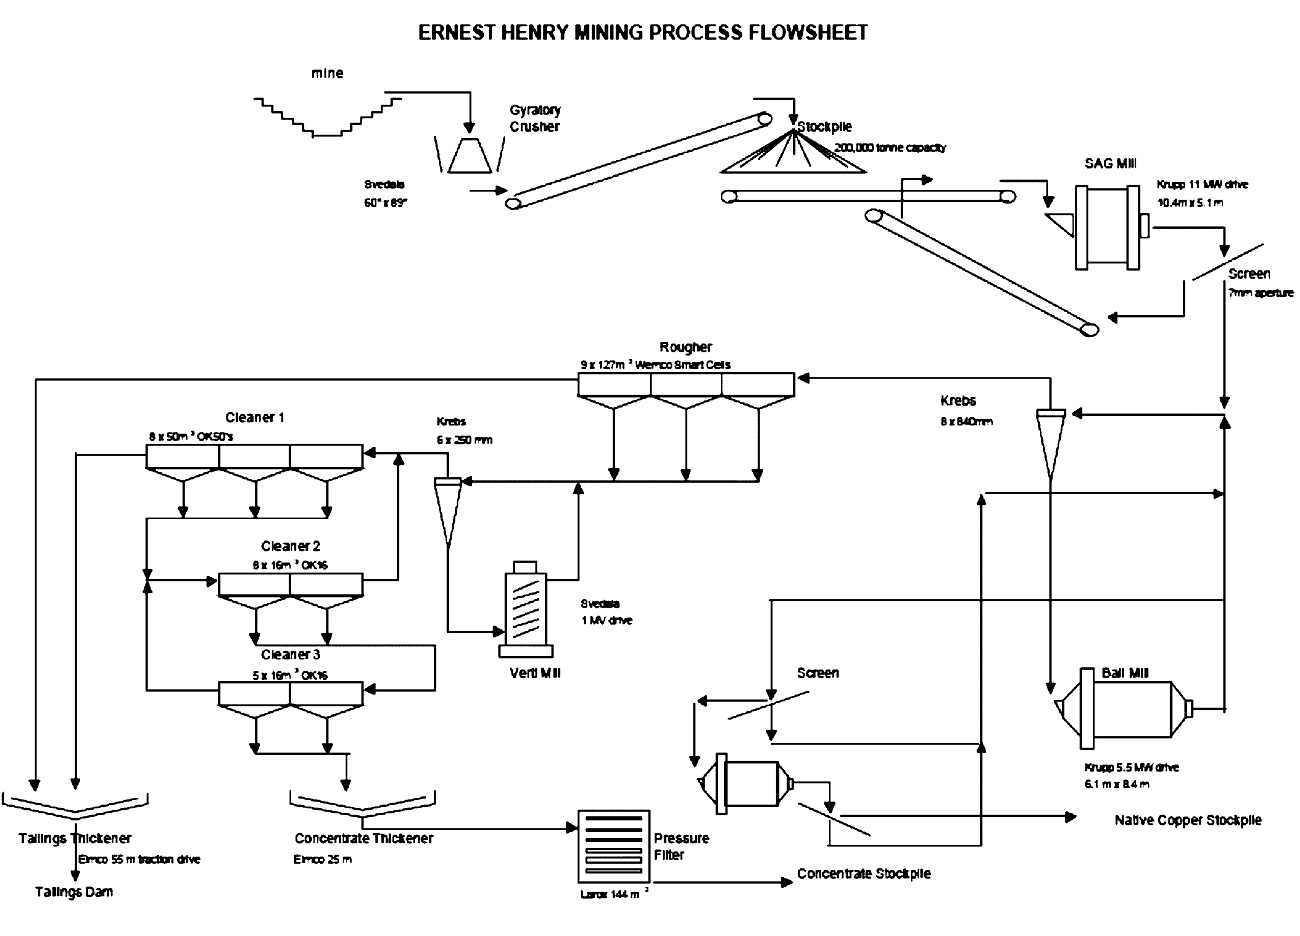 Fig. 2. Typical process flow chart copper ore (Metso). // Bild 2. Typisches Verfahrensfließbild für Kupfererz (Metso)